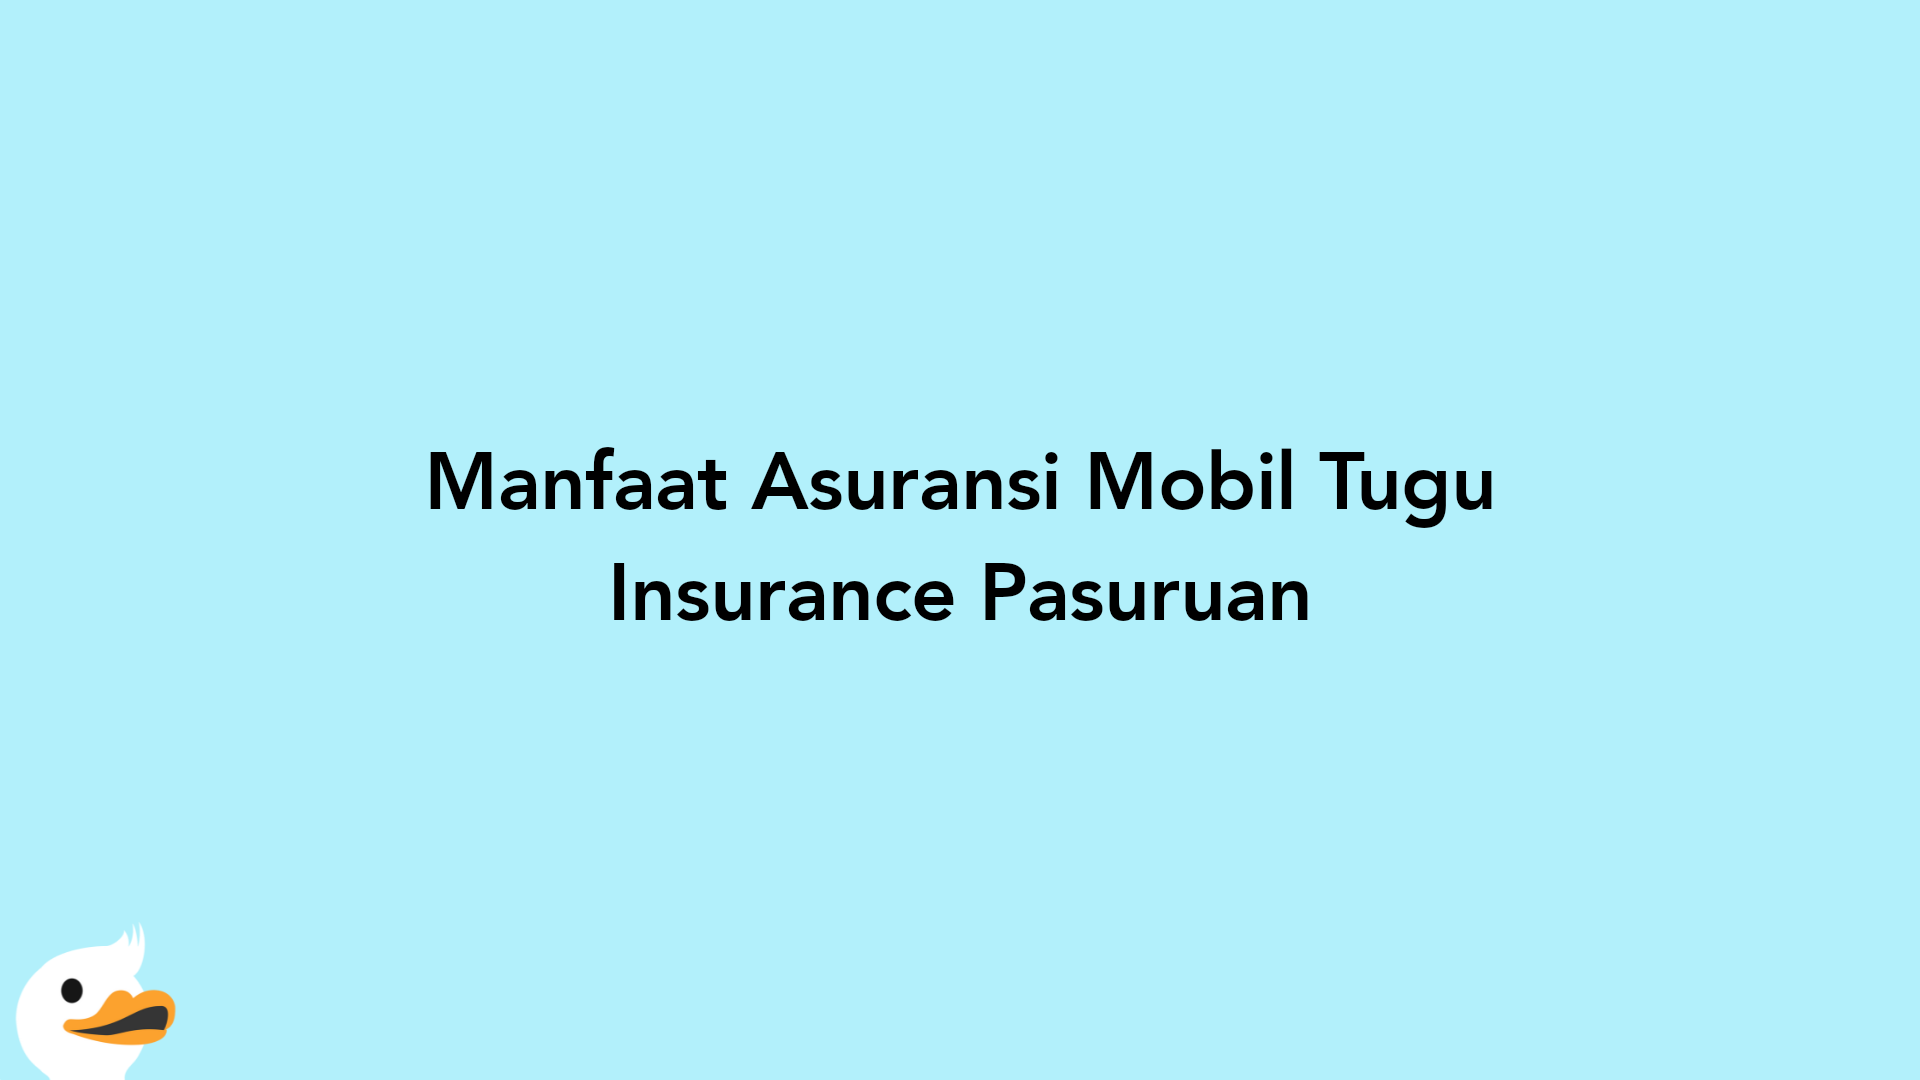 Manfaat Asuransi Mobil Tugu Insurance Pasuruan